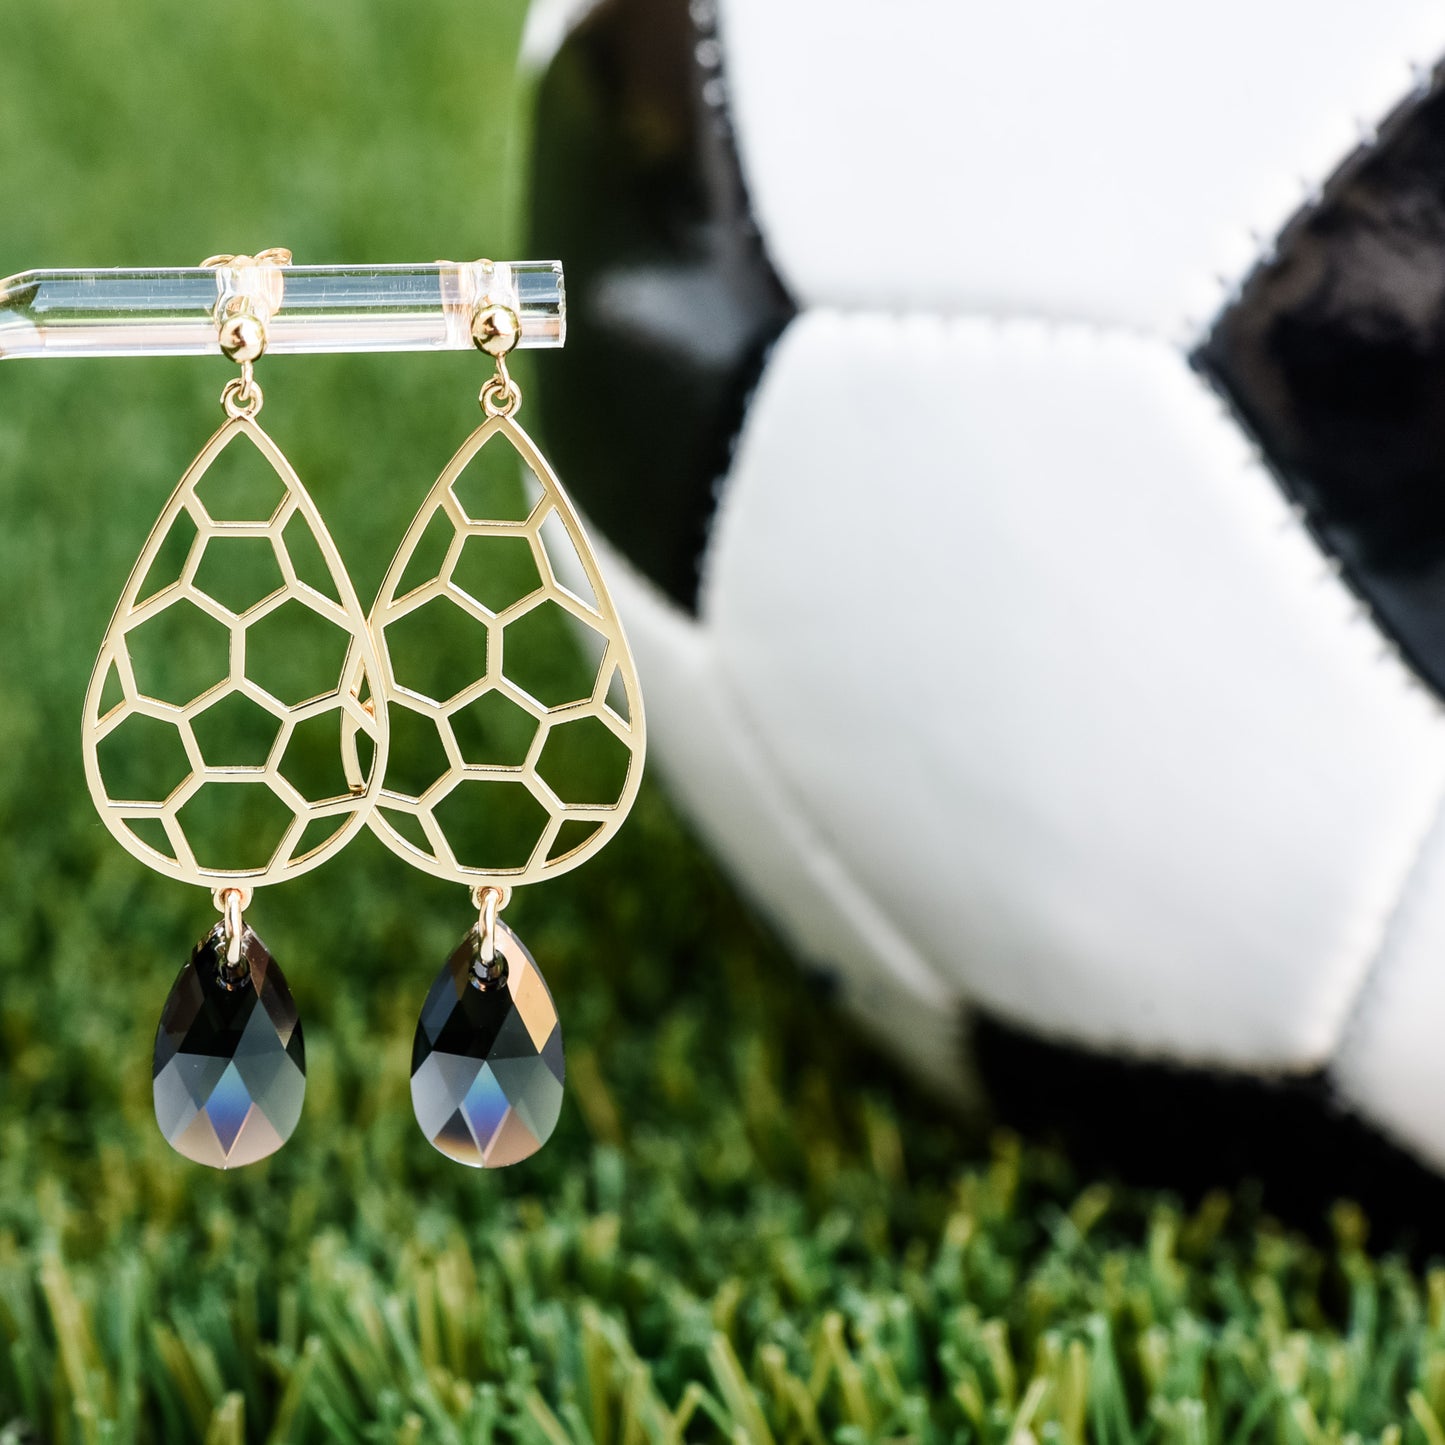 Soccer Teardrop Dangle Earrings (Post Style)